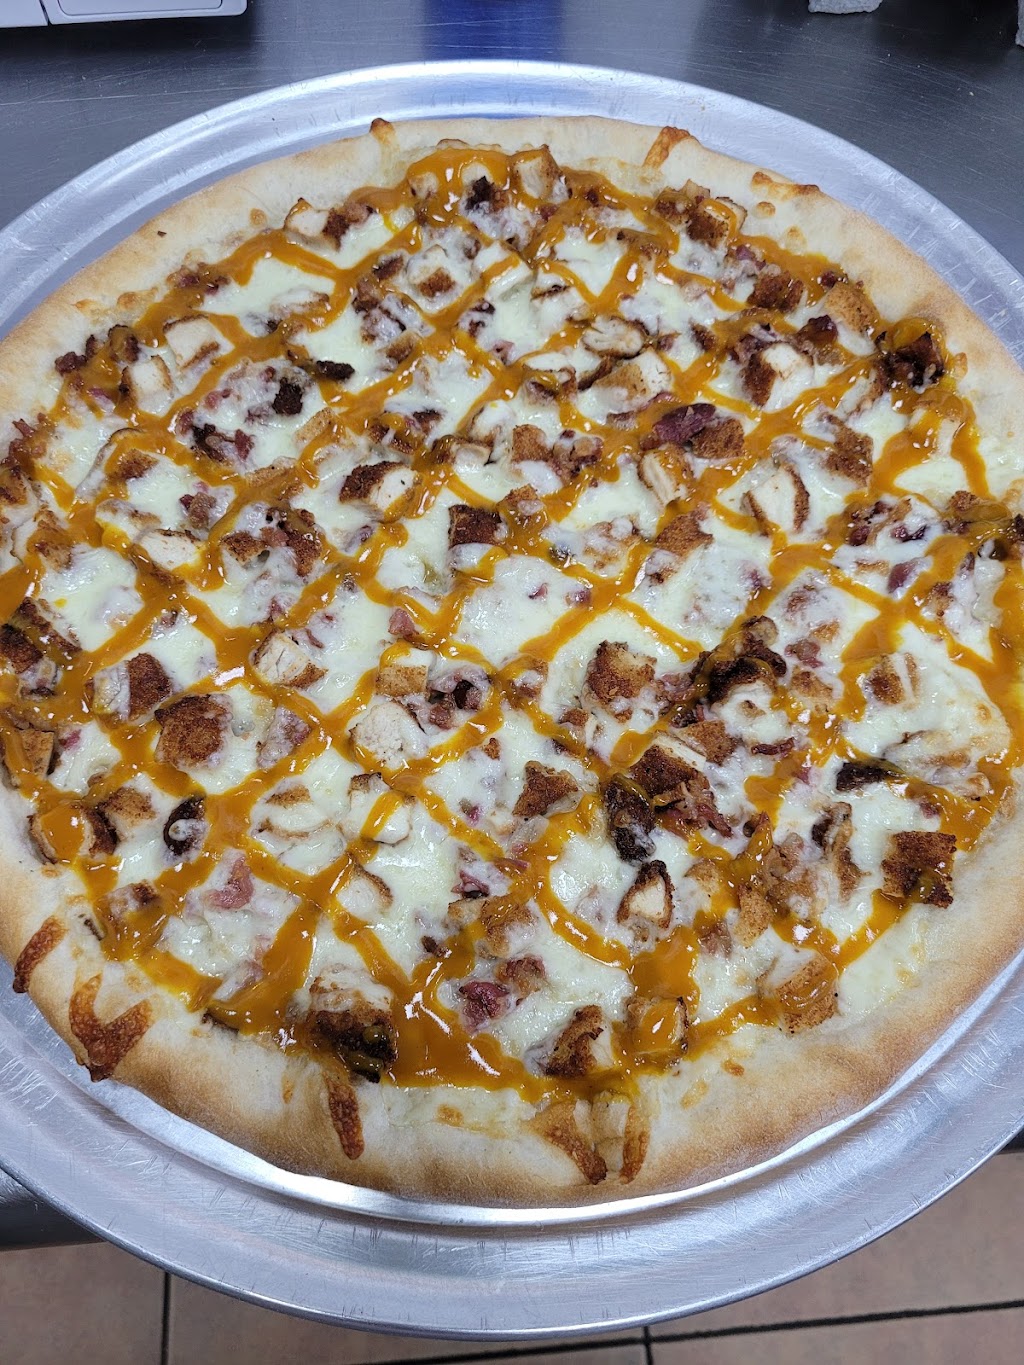 Danny’s Pizza & Deli | 368 New Hempstead Rd #1, New City, NY 10956 | Phone: (845) 638-0378